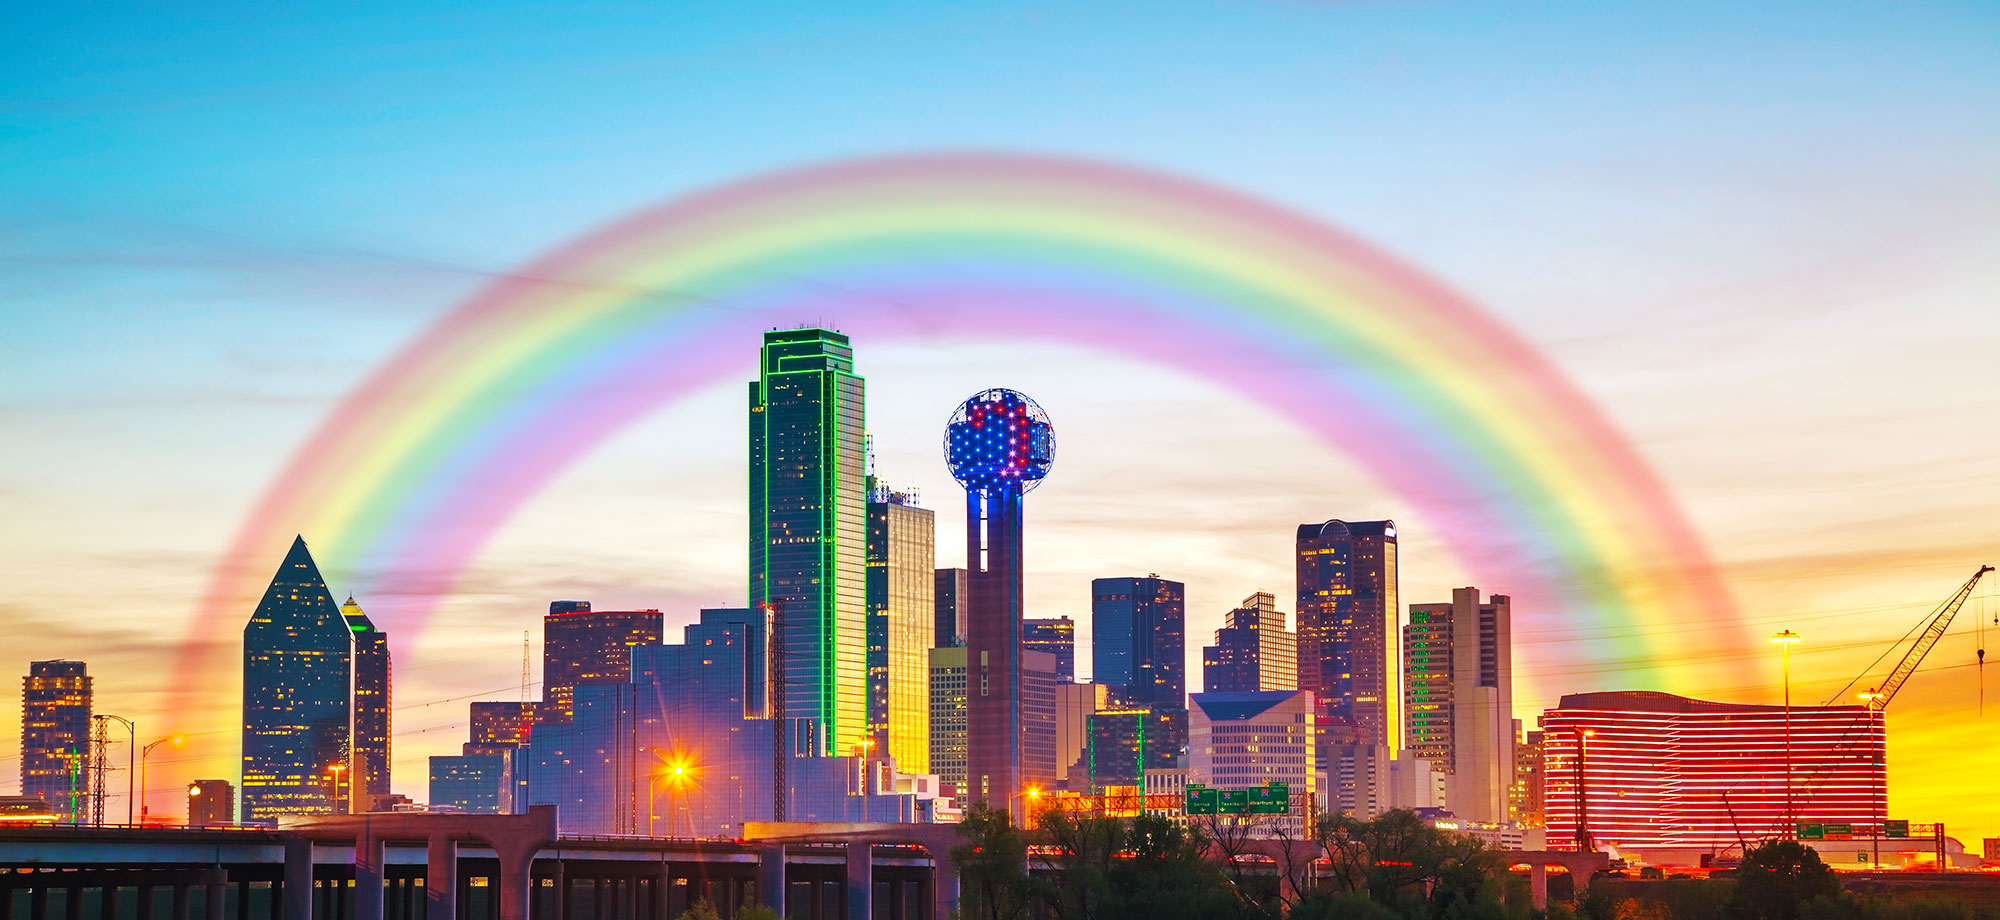 Rainbow over the Dallas skyline